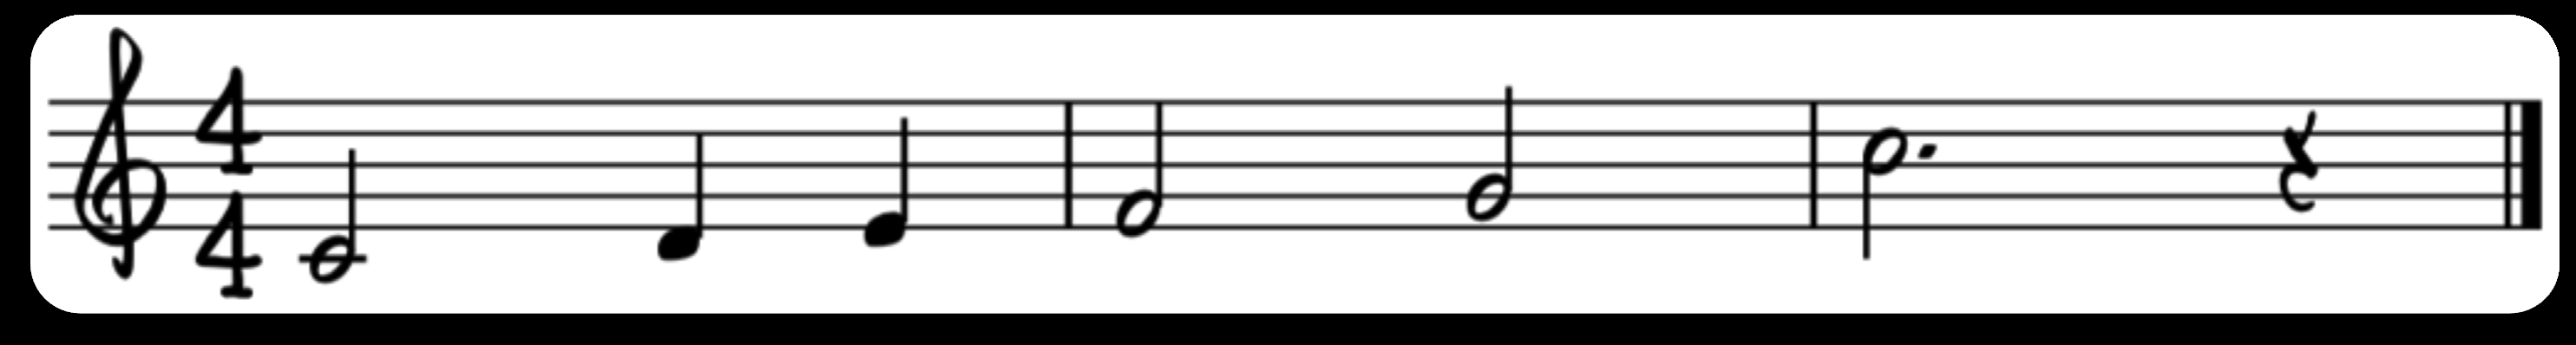 Dominantrekker steg for steg Hovedregel: Vi kan når som helst sette en dominantakkord foran en annen akkord så lenge det passer med melodien.